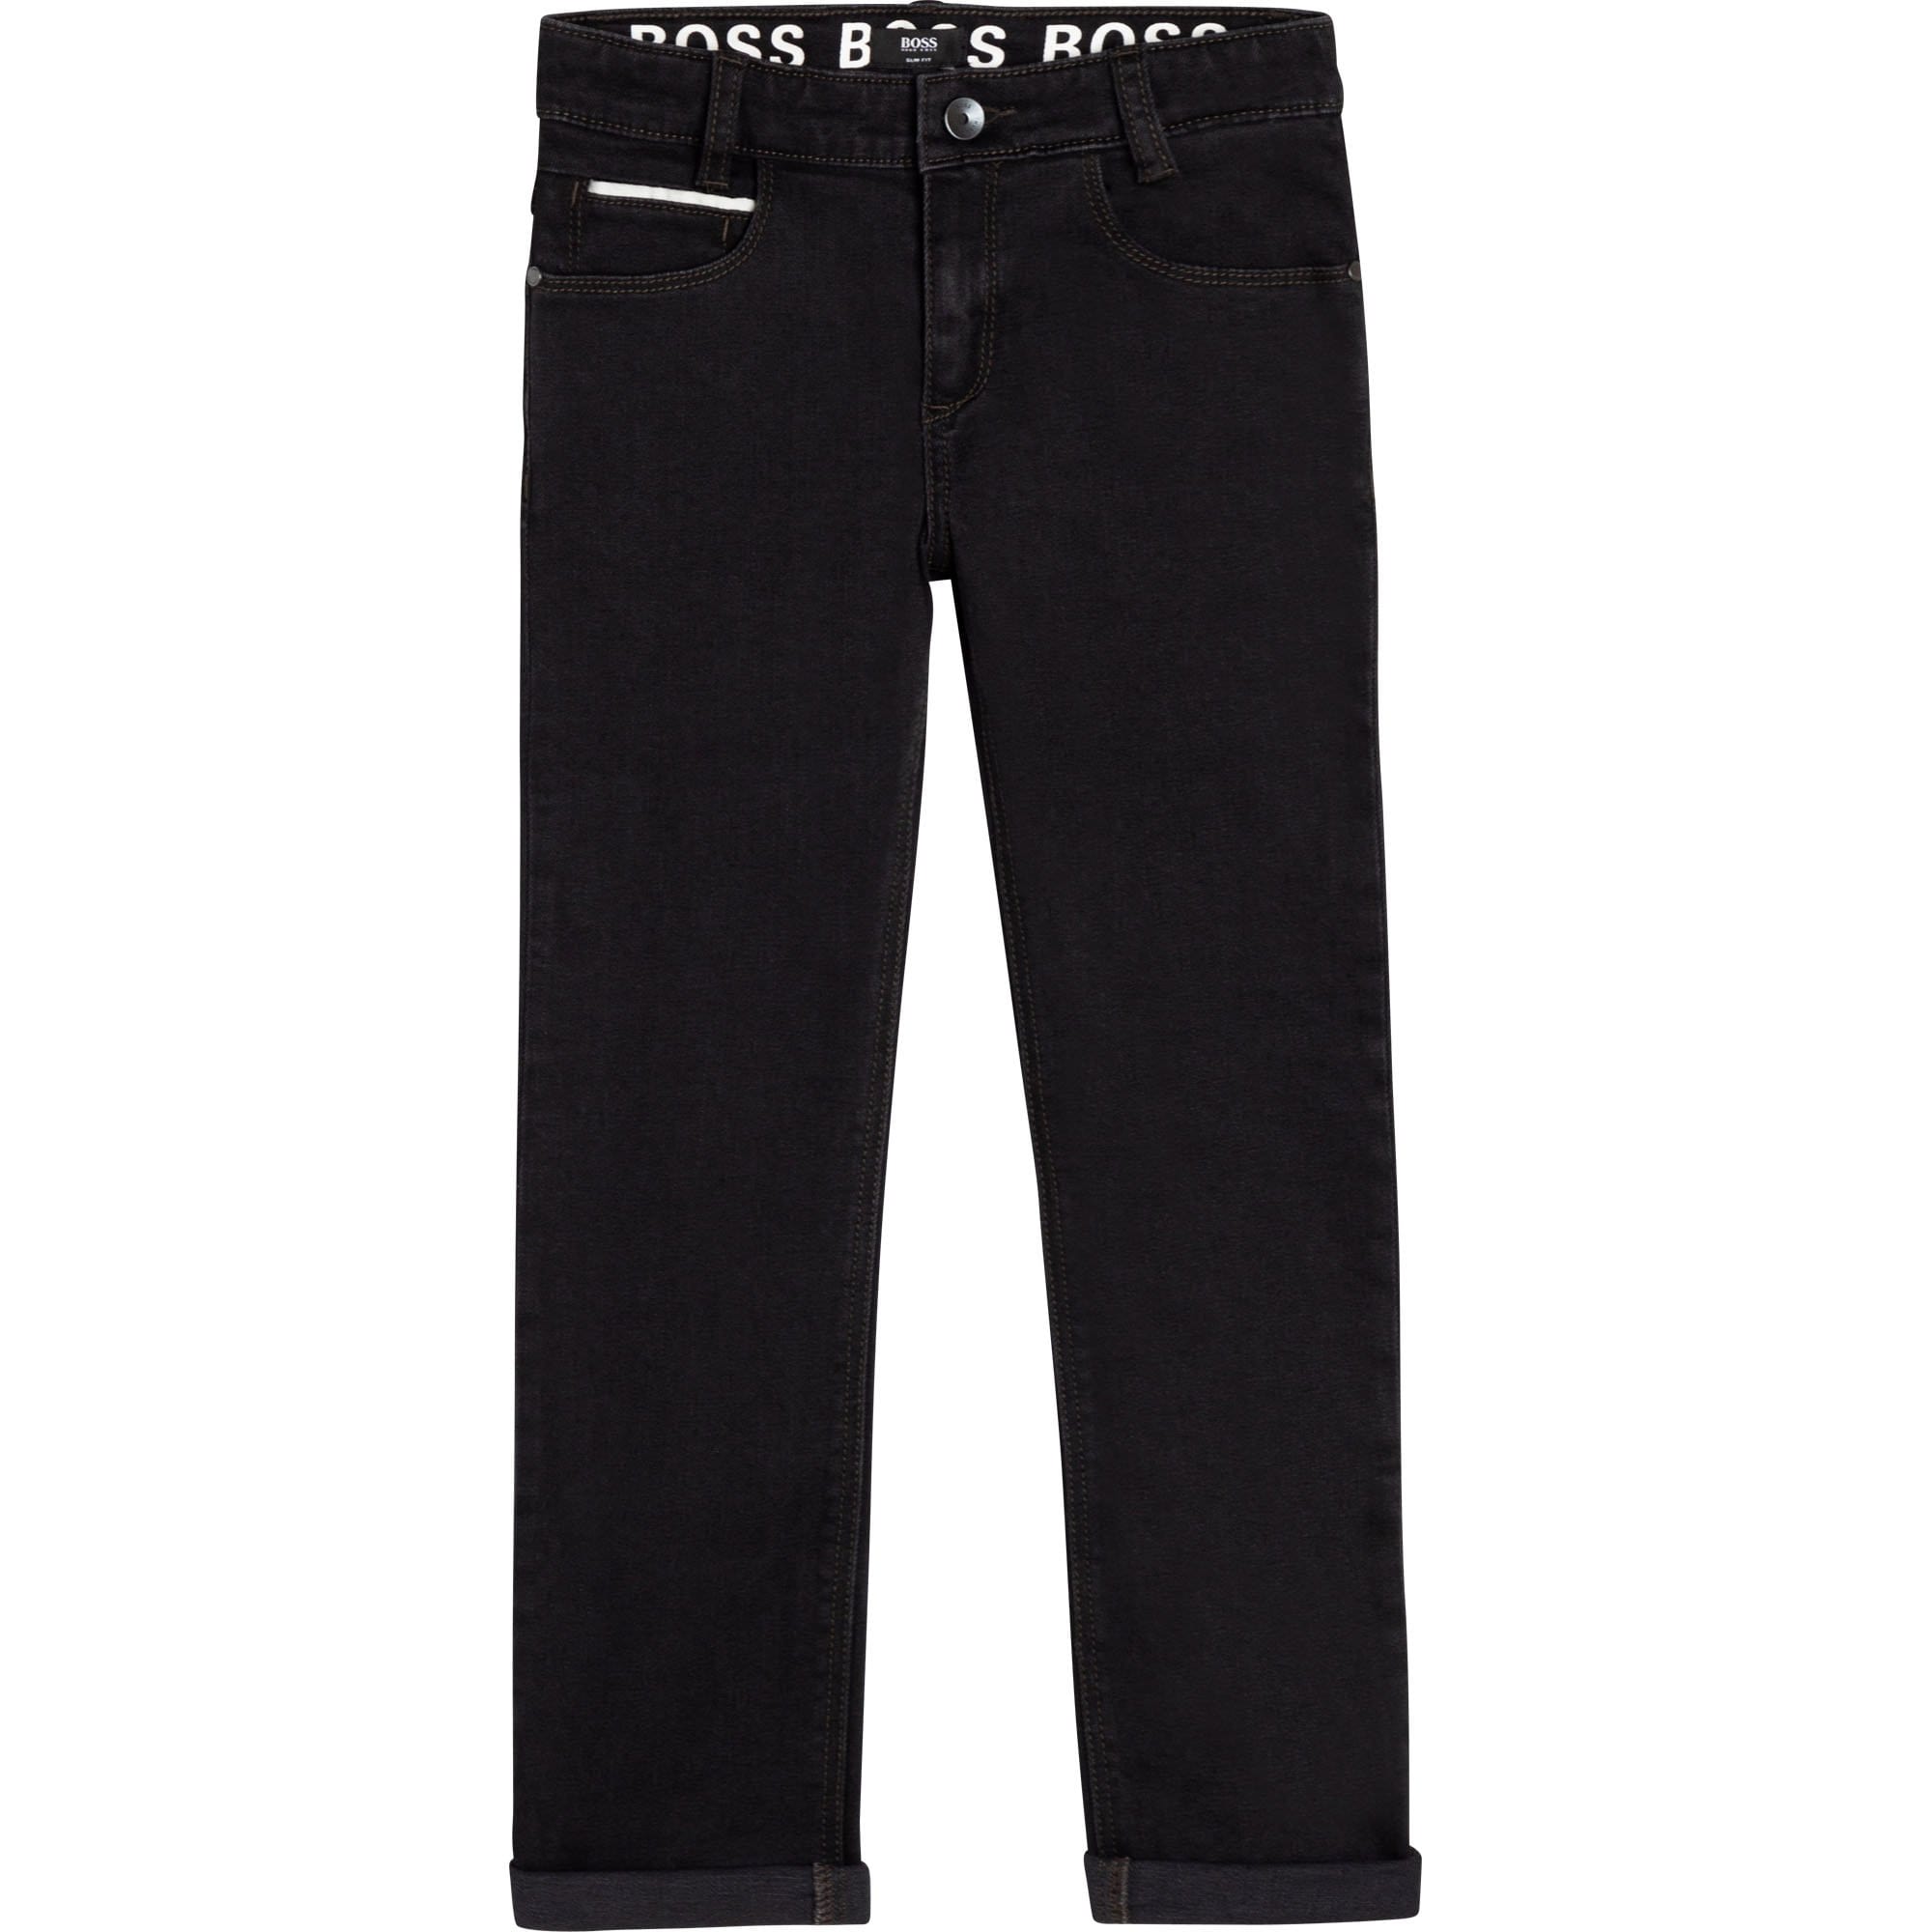 HUGO BOSS - Jeans - Black